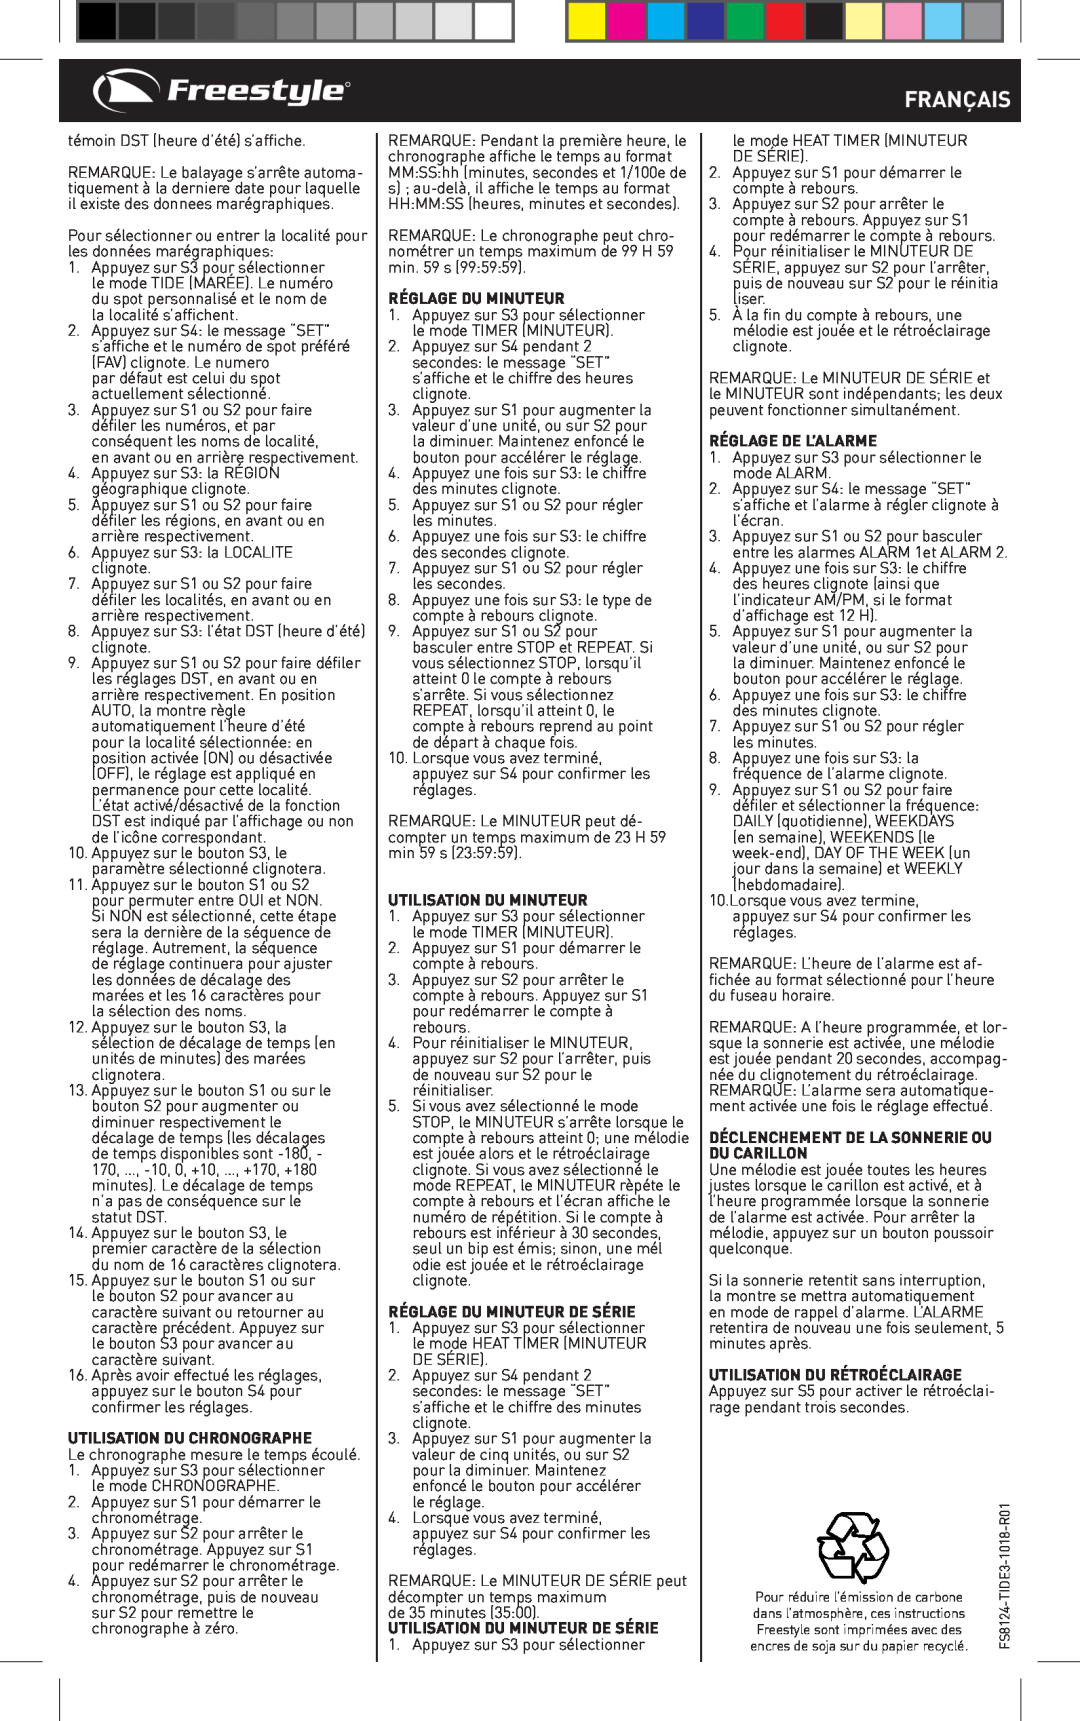 Freestyle TIDE 3.0 manual Utilisation Du Chronographe, Utilisation Du Minuteur, Réglage Du Minuteur De Série, Français 